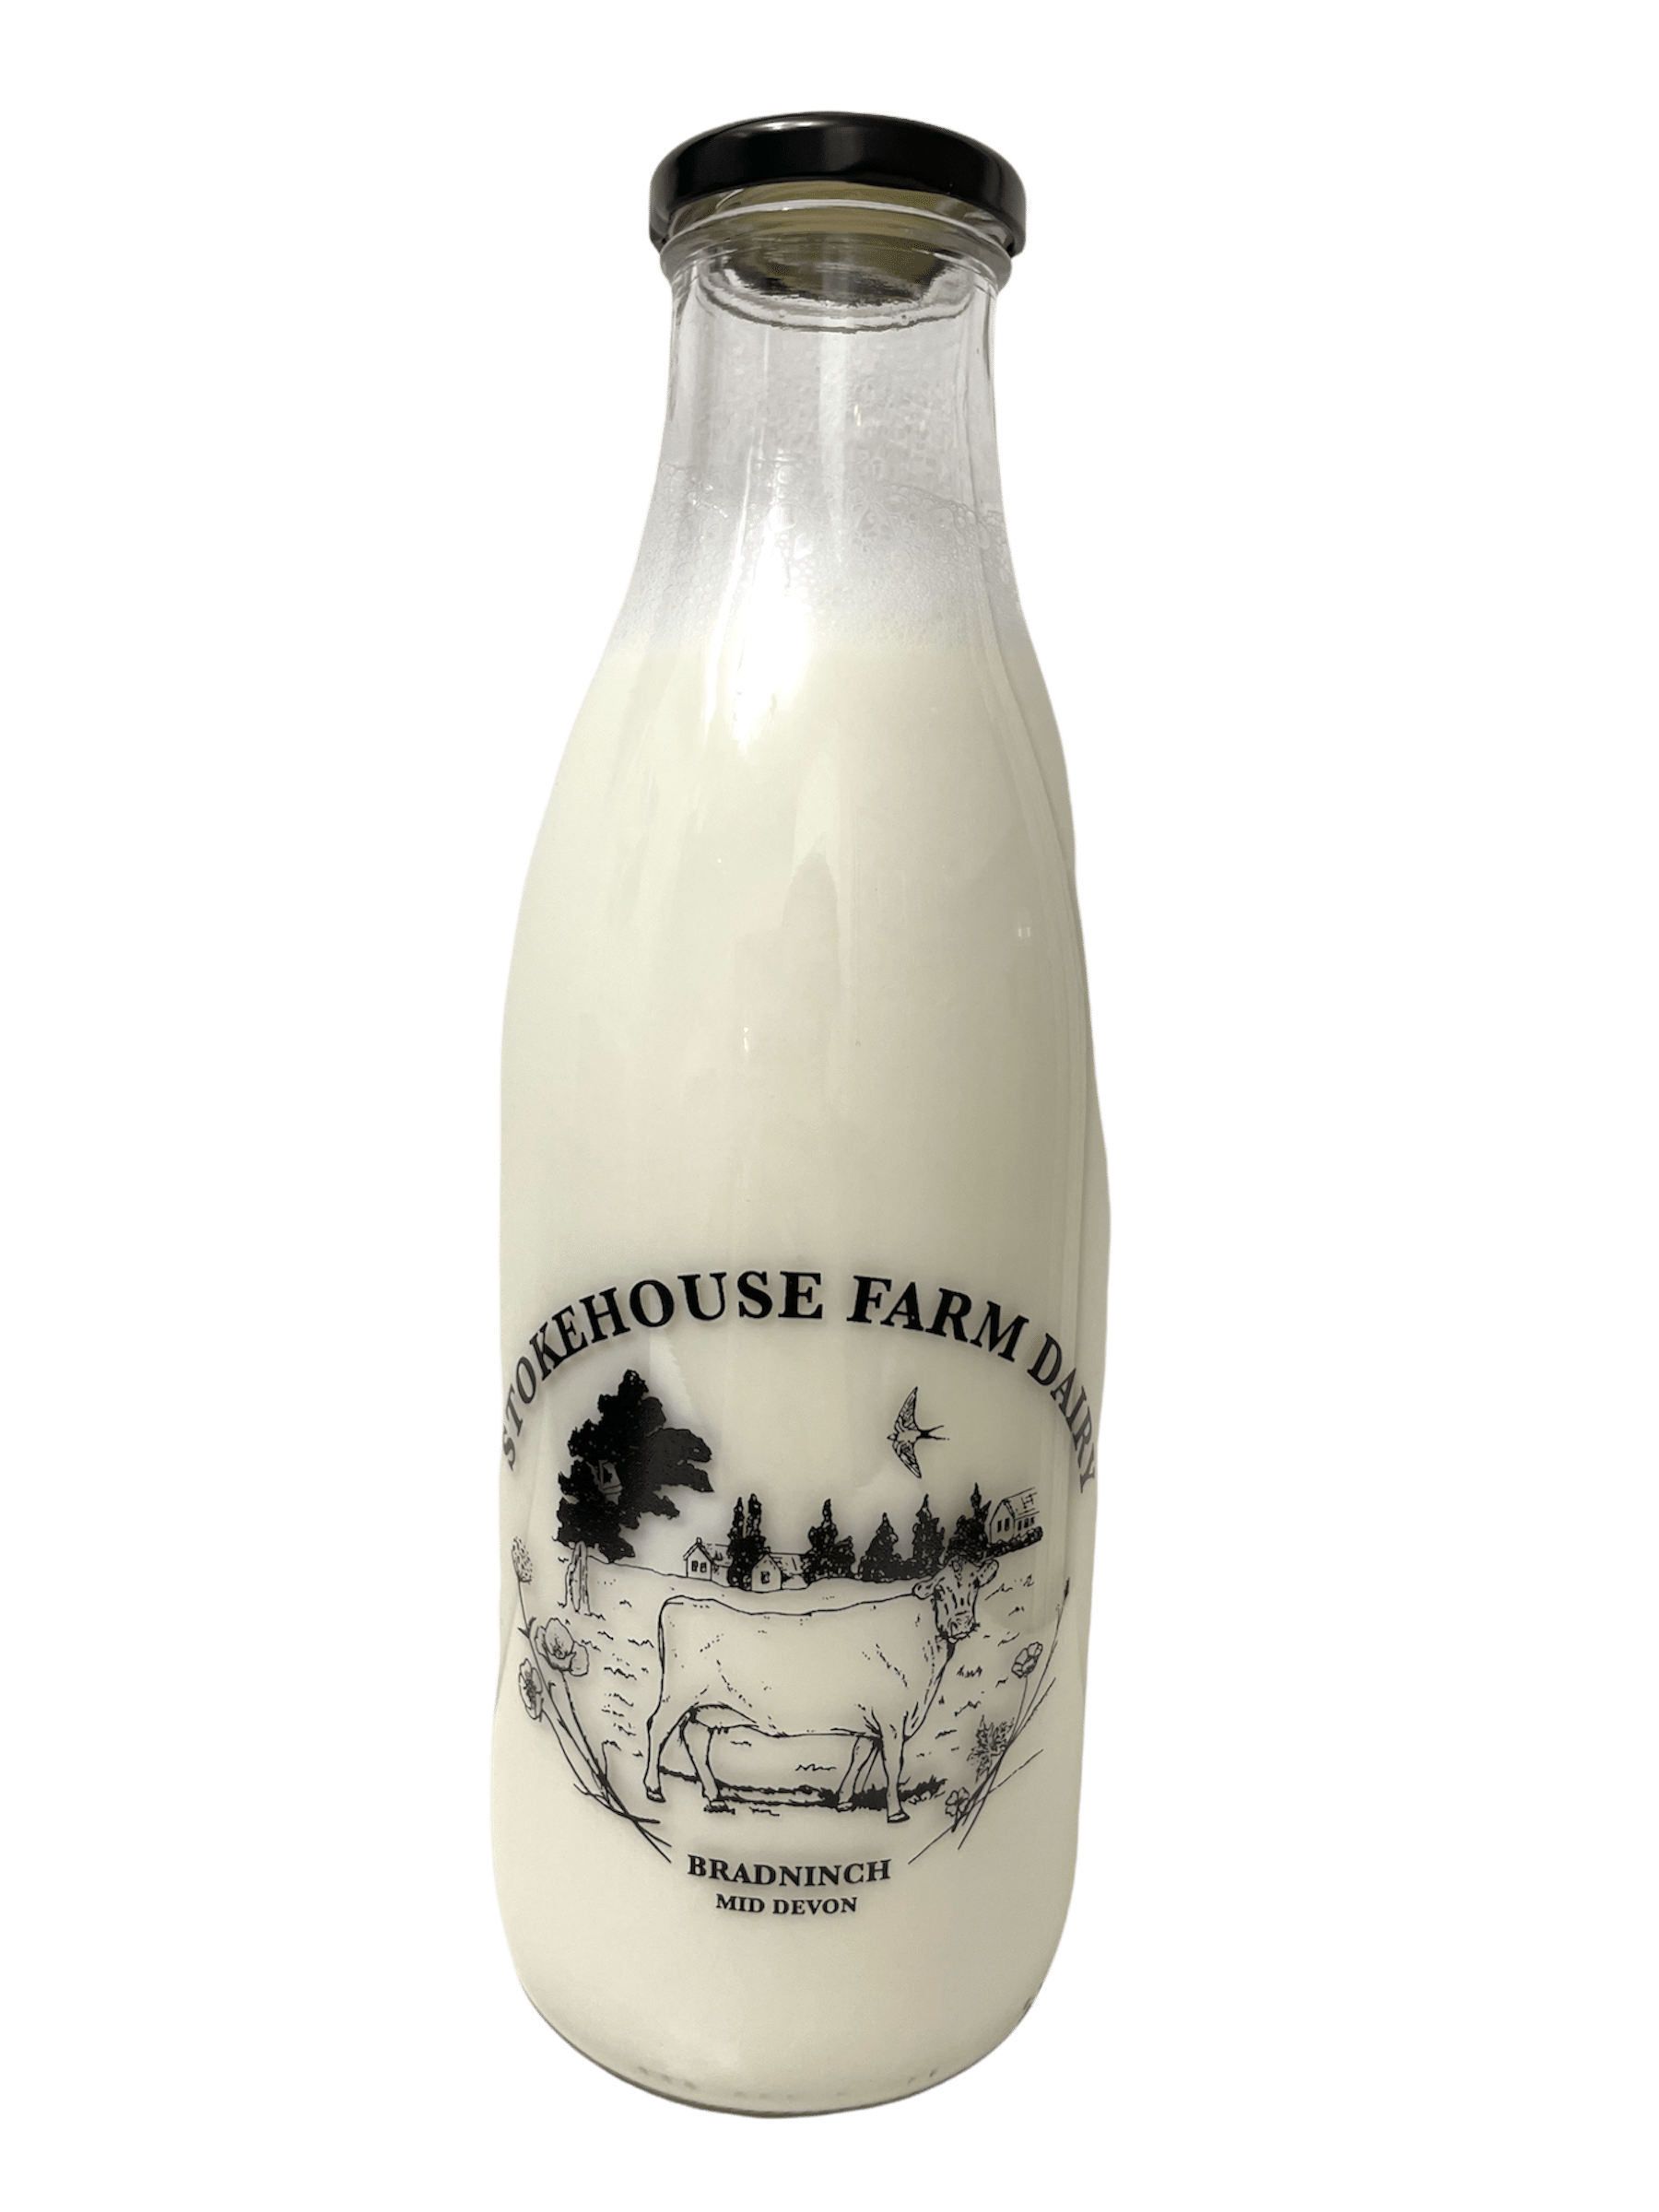 Stokehouse Farm Dairy - Kelis.info